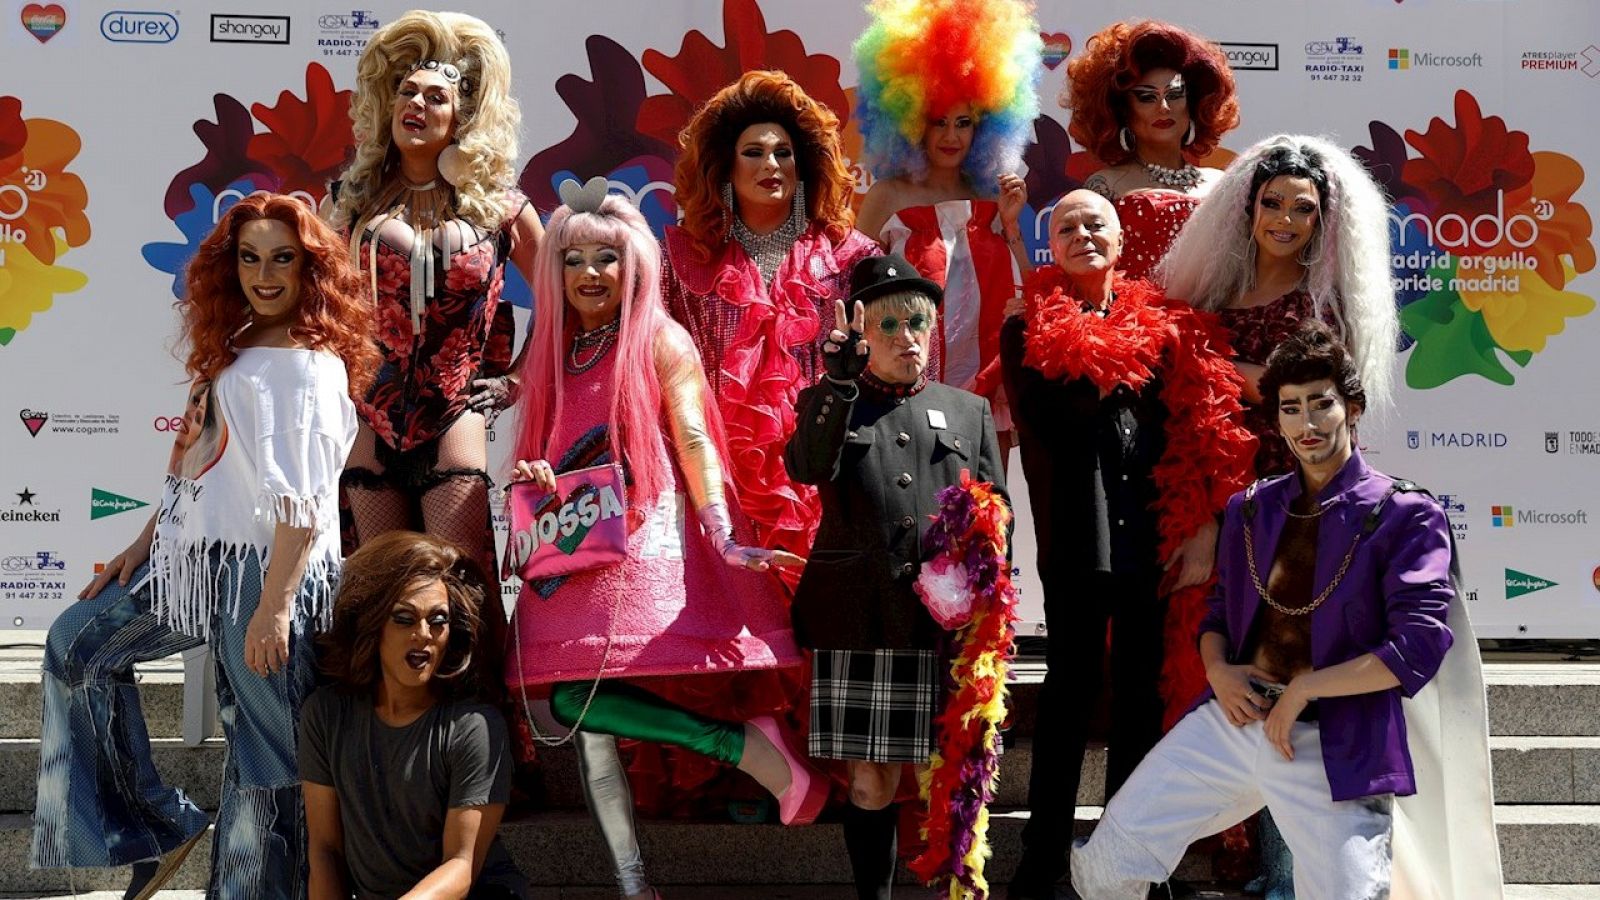 Un pregón virtual en homenaje a la escena 'drag queen' da el pistoletazo de salida al Orgullo LGTB